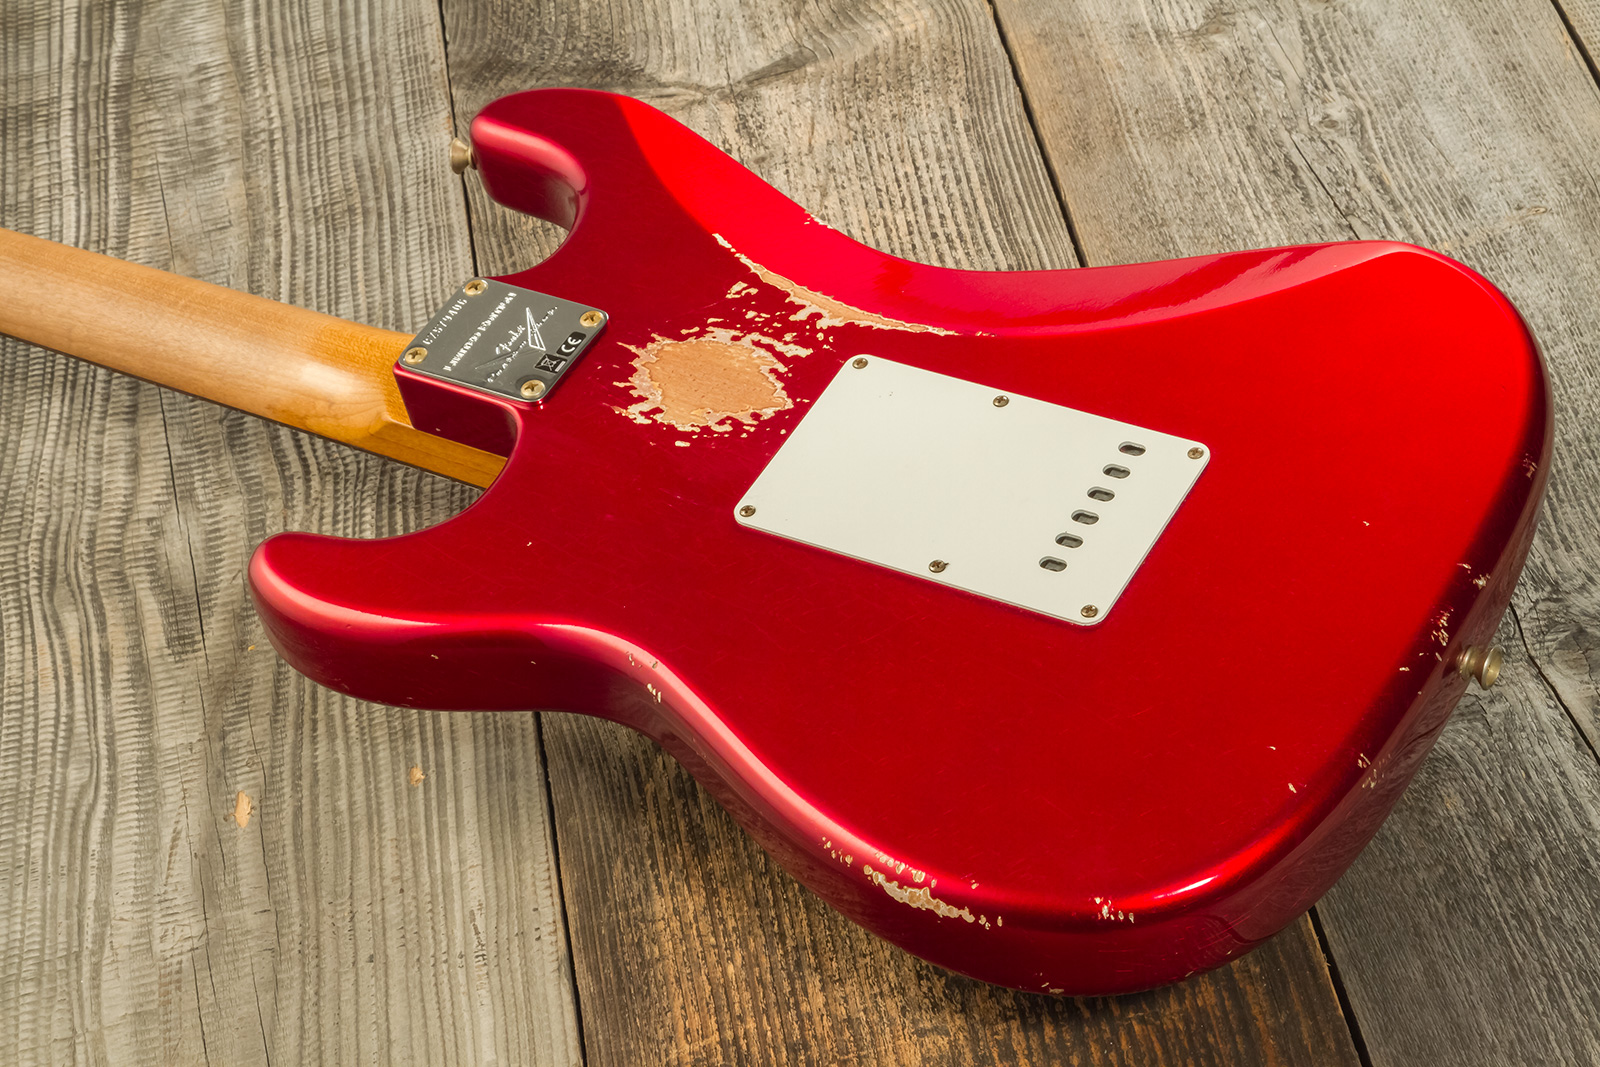 Fender Custom Shop Strat 1963 3s Trem Rw #cz579406 - Relic Aged Candy Apple Red - Elektrische gitaar in Str-vorm - Variation 5